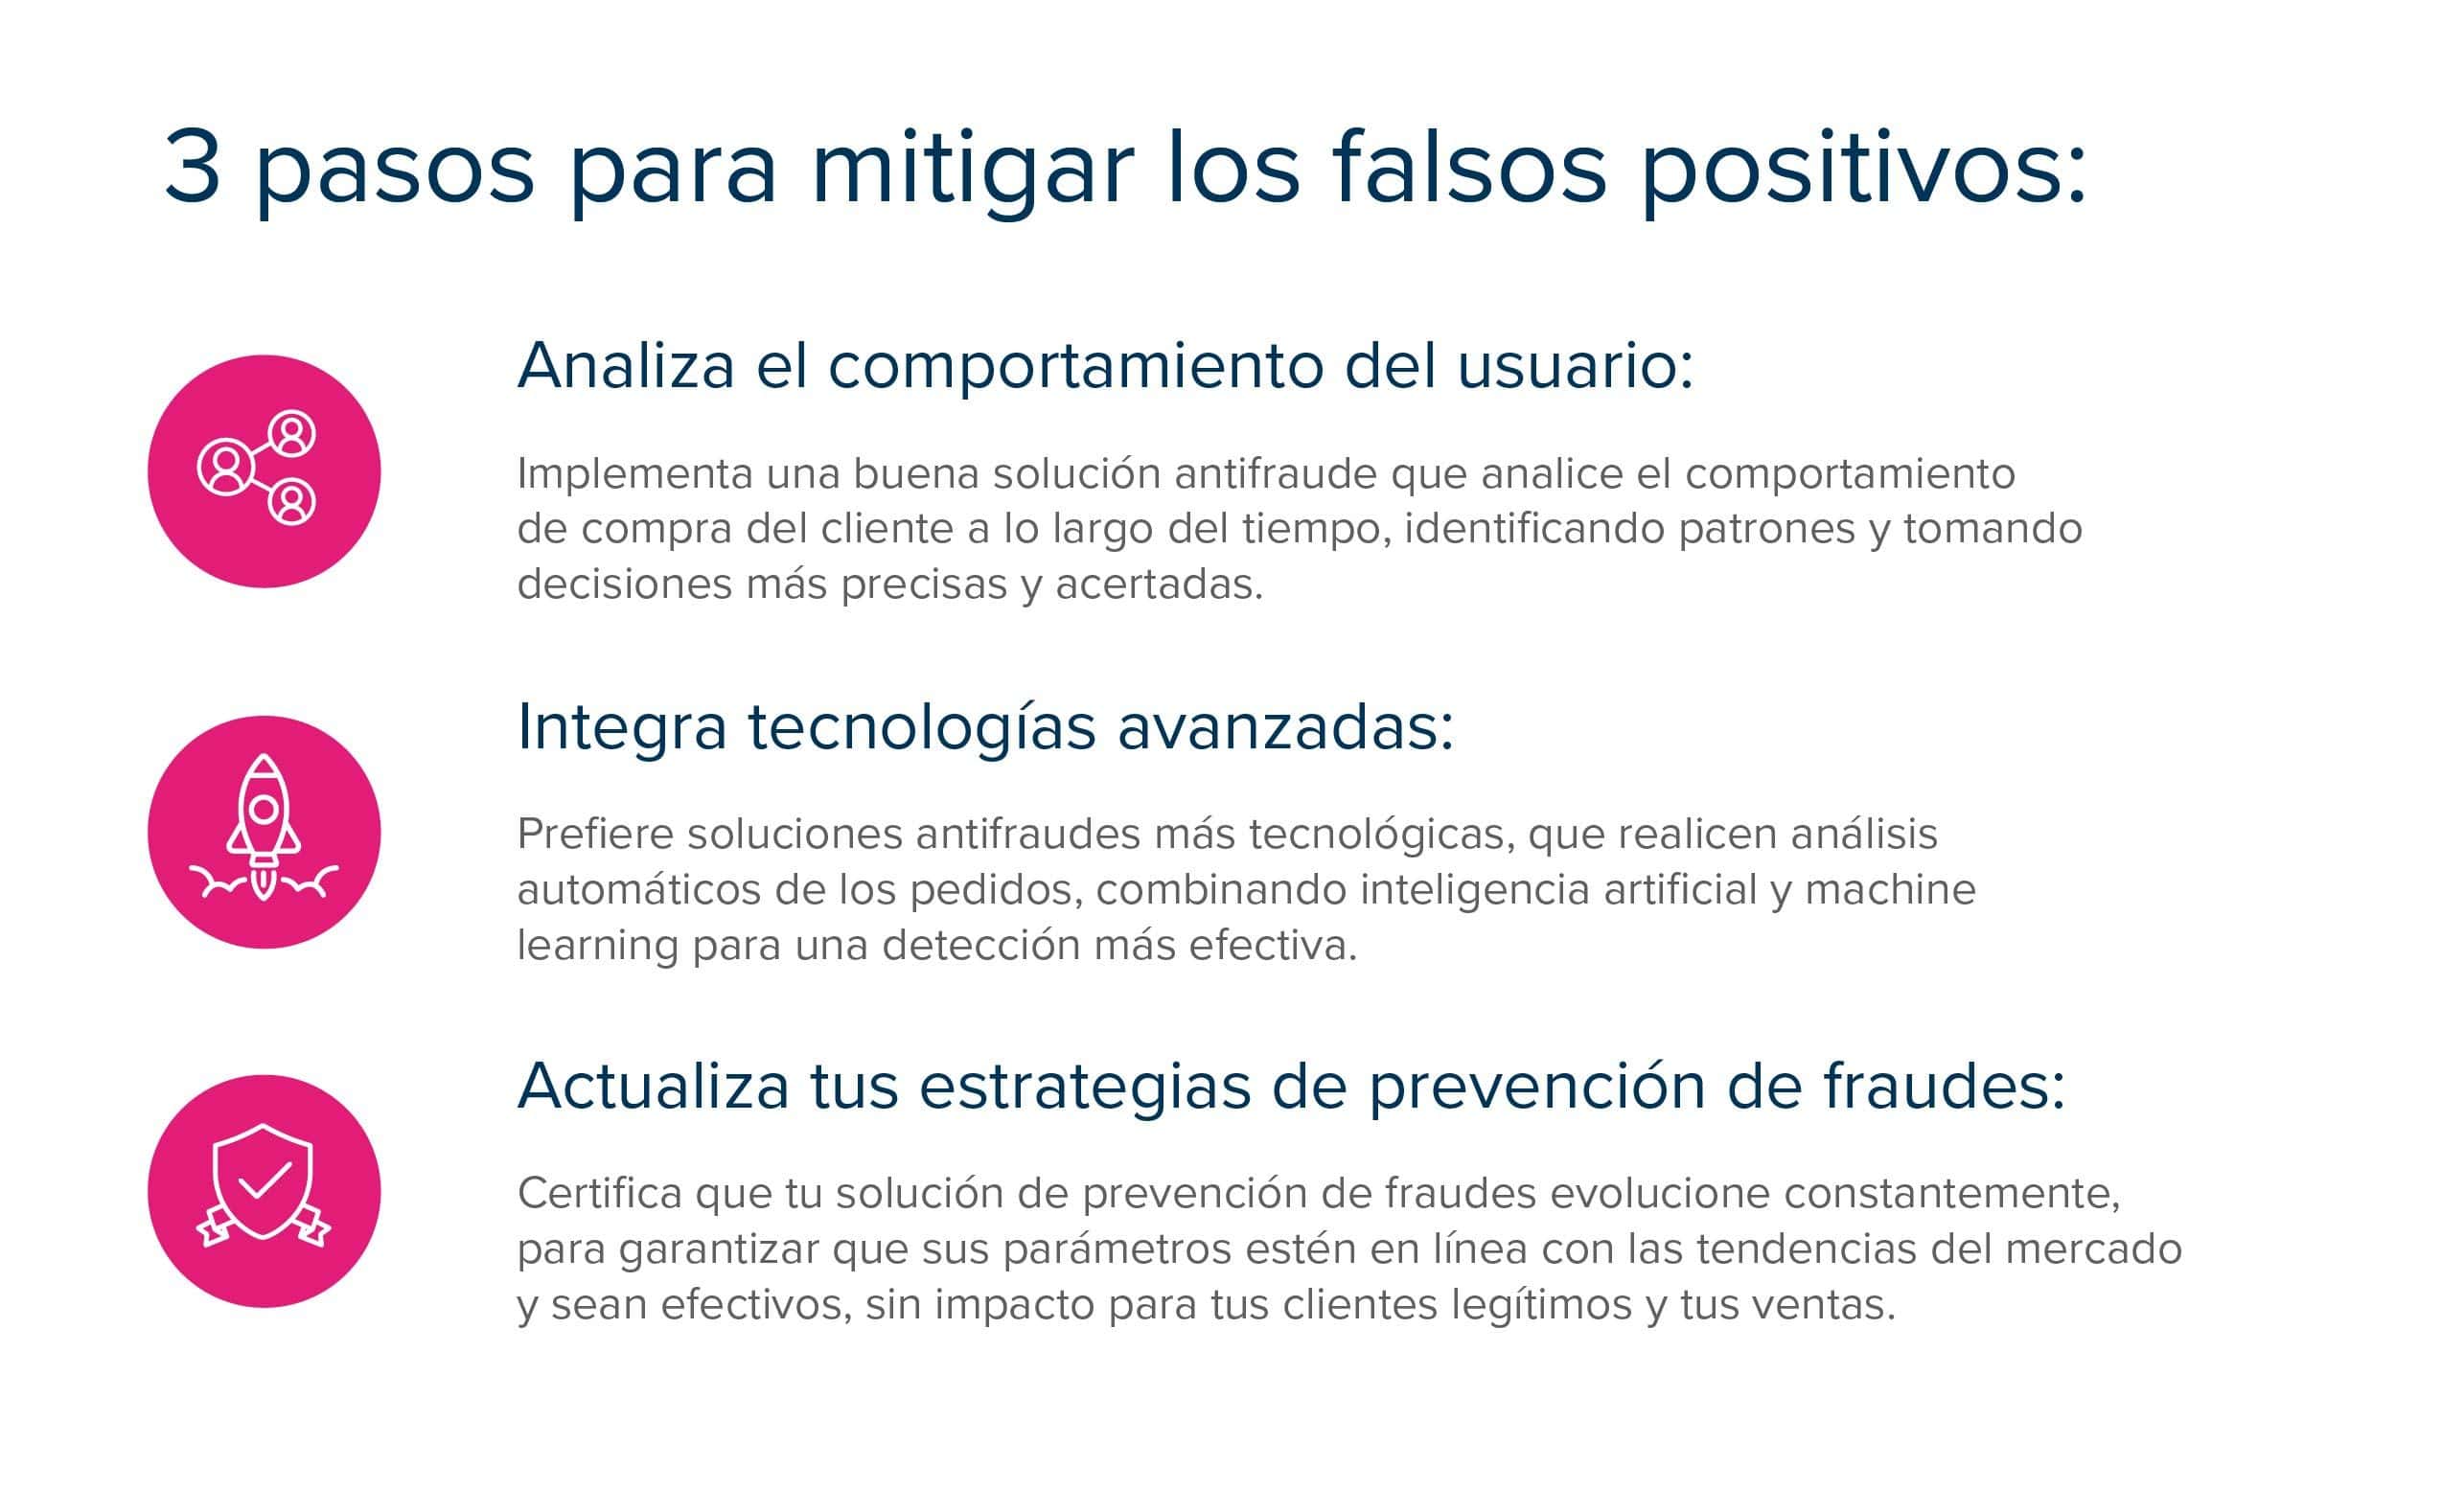 3 pasos para mitigar los falsos positivos: analiza el comportamiento del usuario, integra tecnologías avanzadas y actualiza tus estrategias de prevención de fraudes